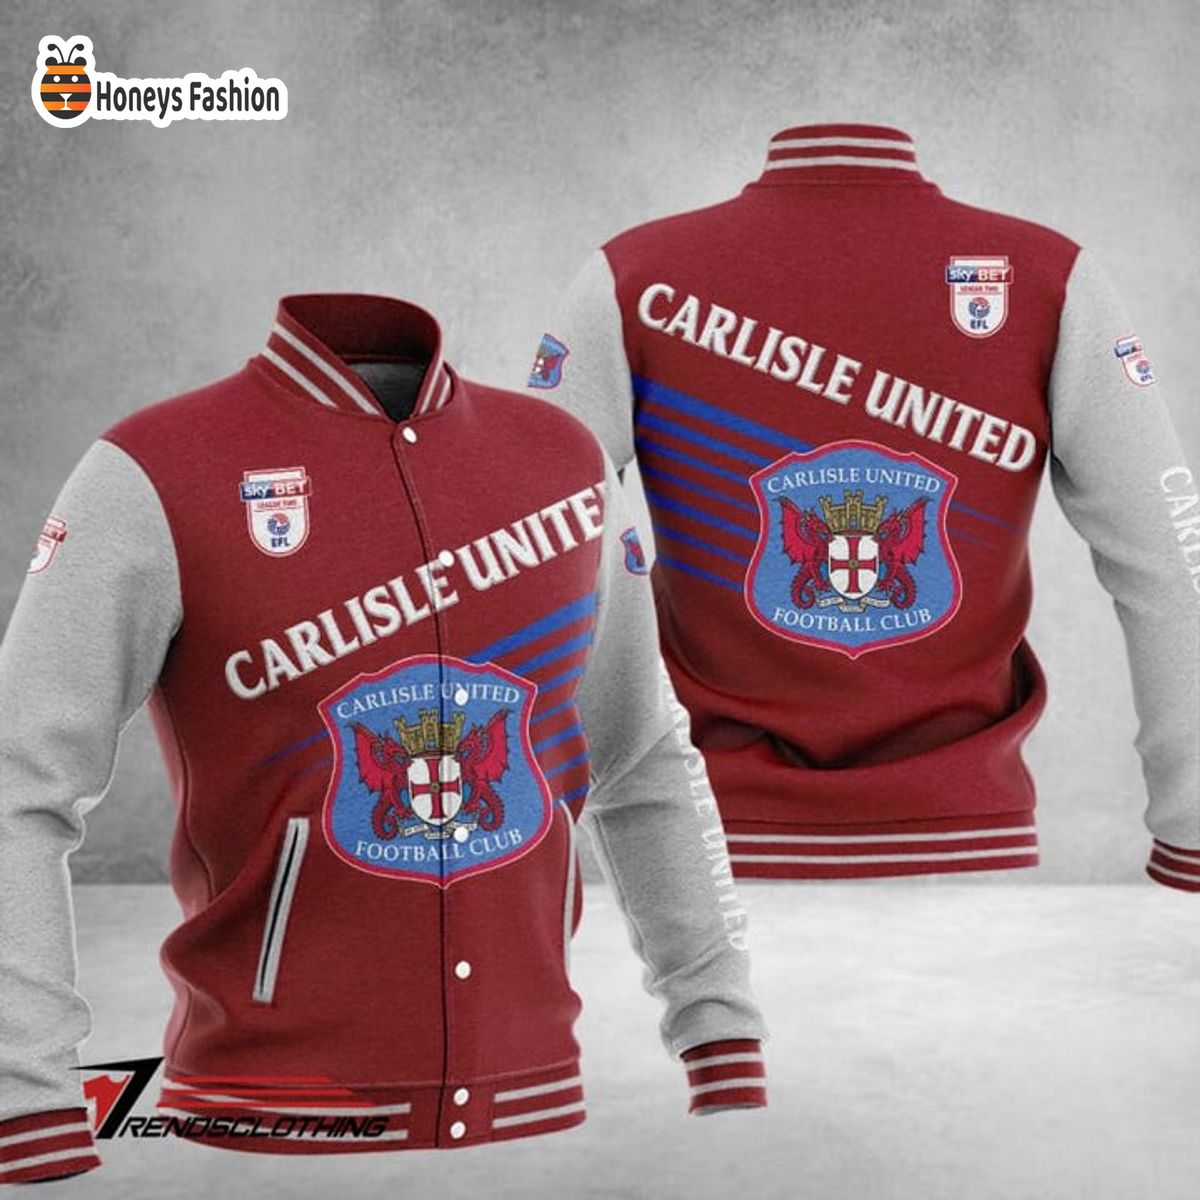 Carlisle United Baseball Jacket